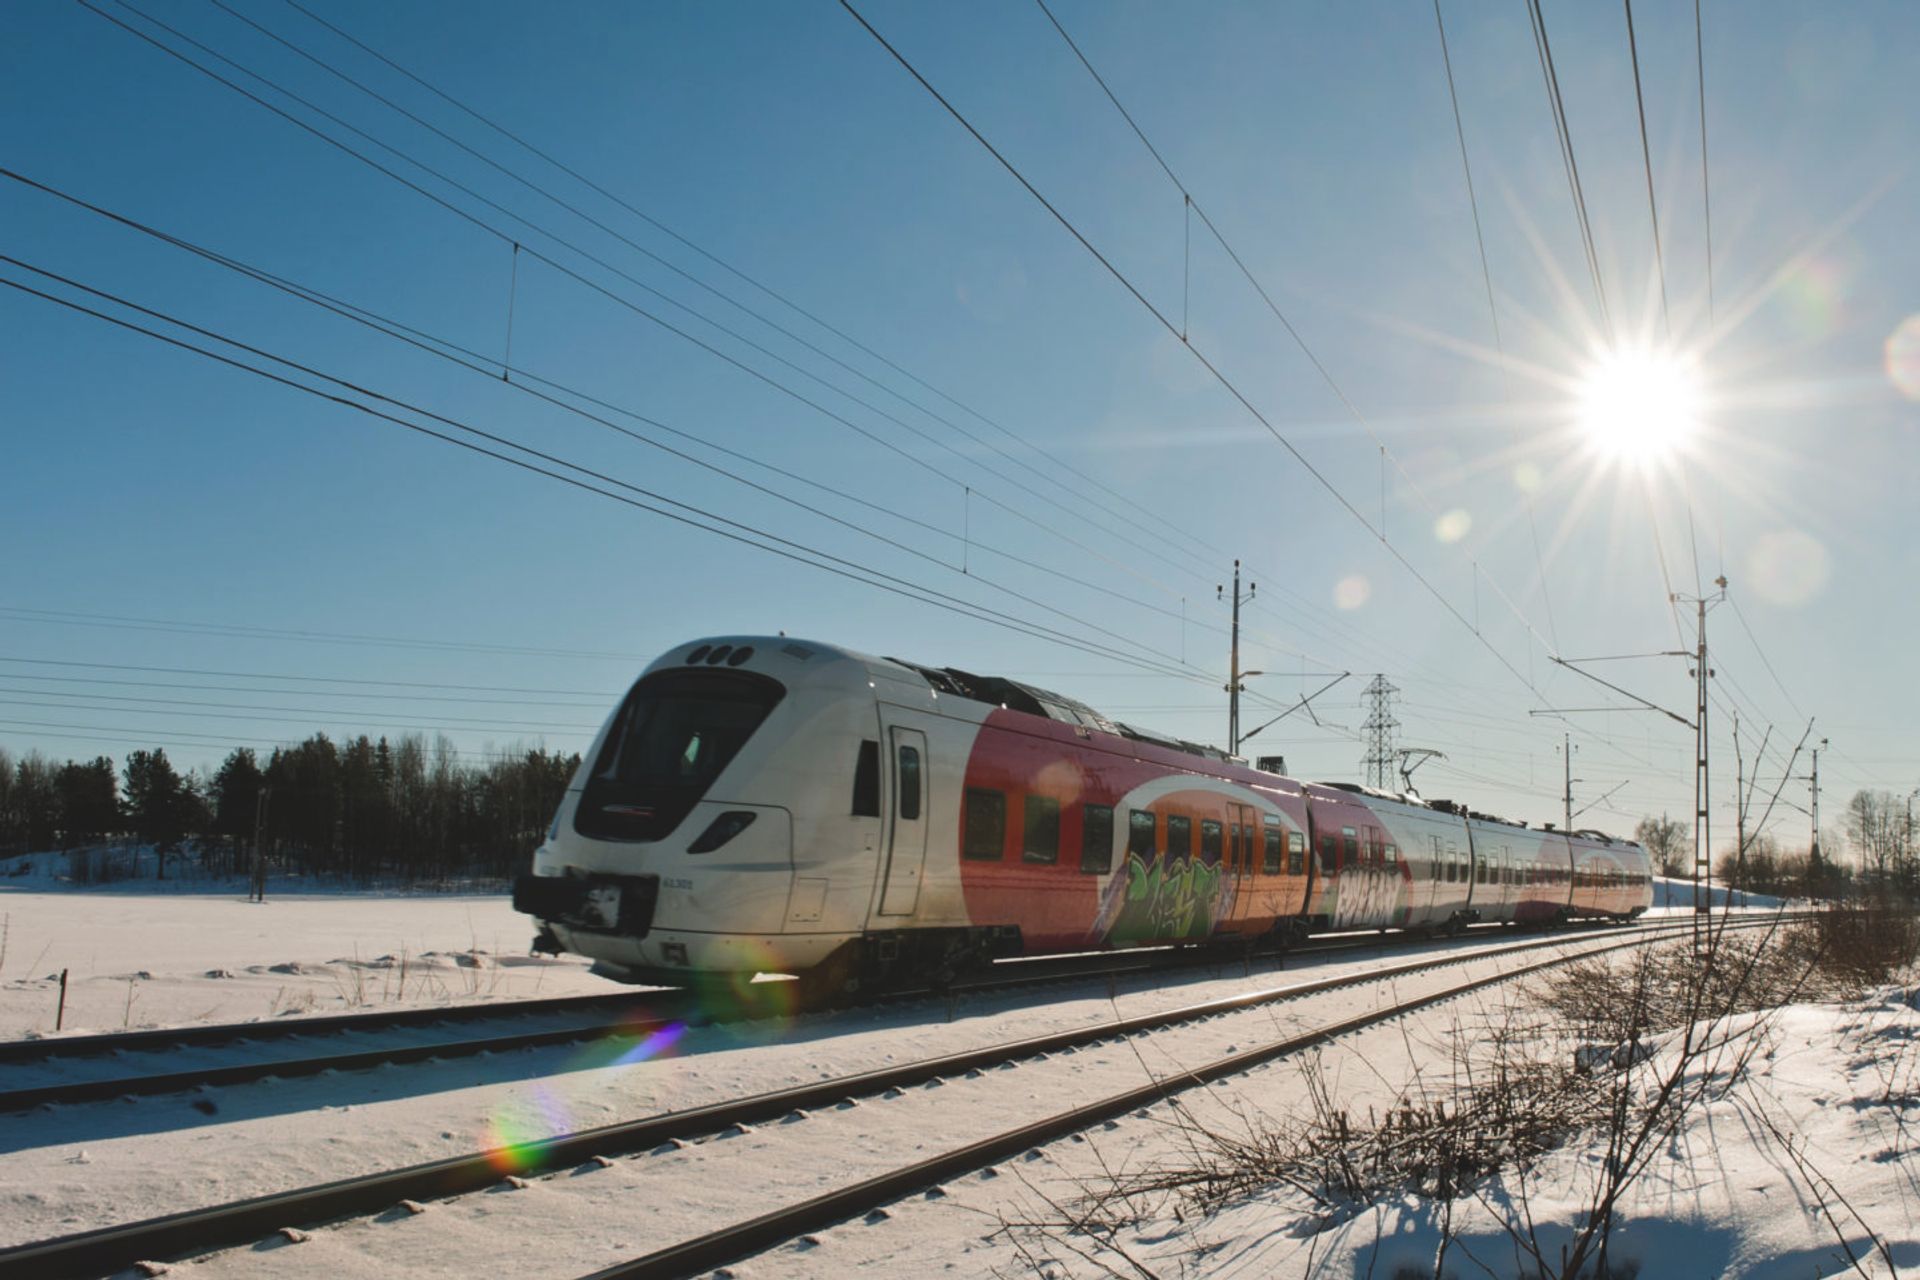 Train travel in Sweden